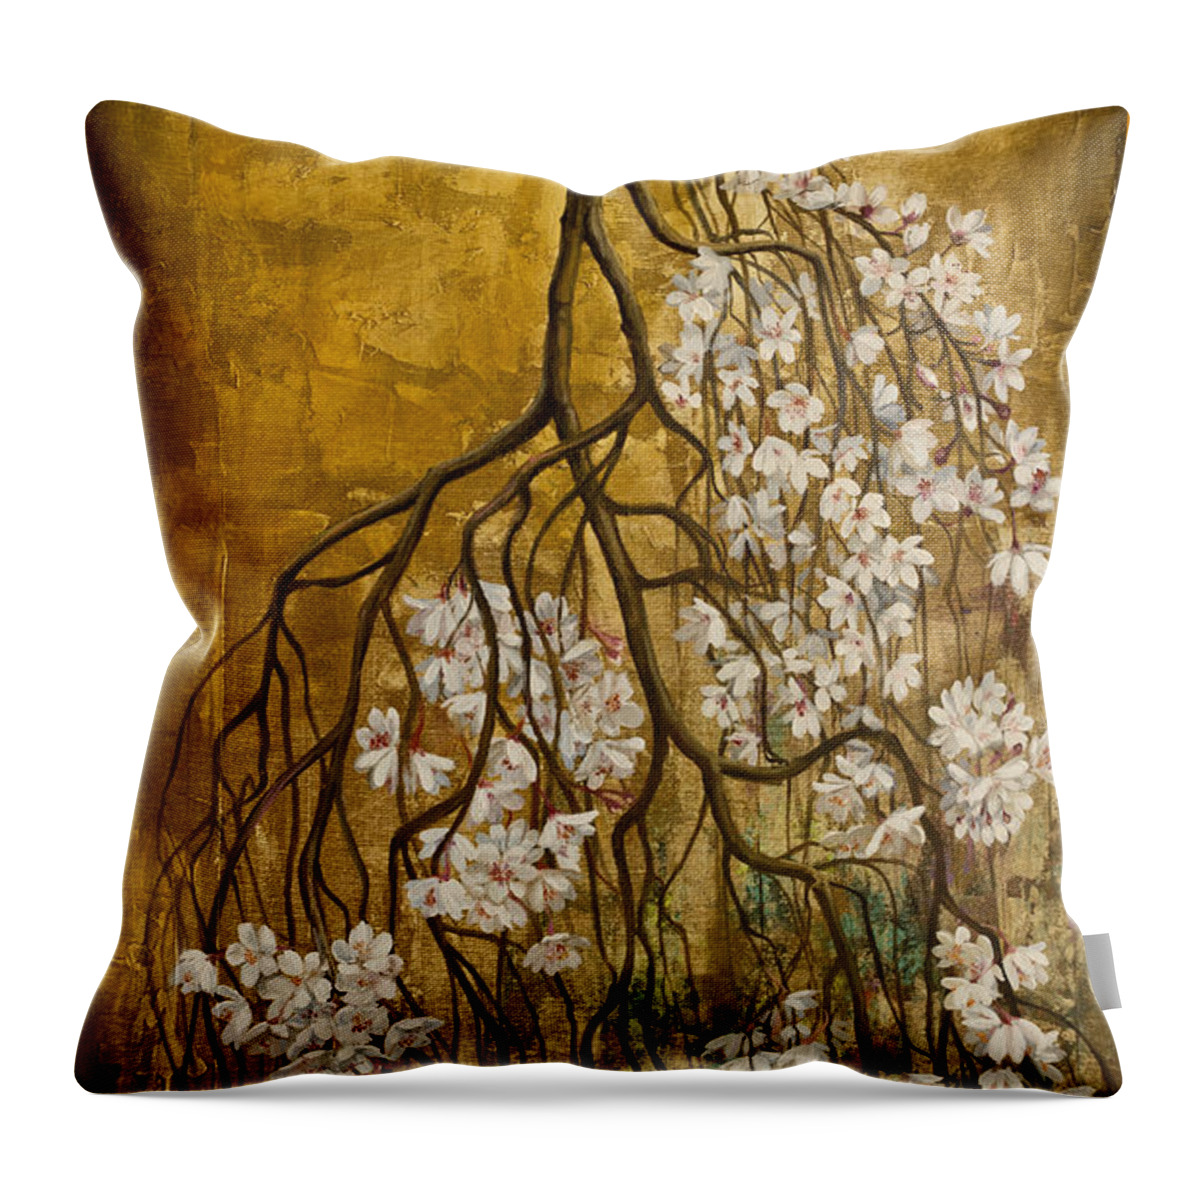 Sakura Throw Pillow featuring the painting Blooming sakura by Vrindavan Das